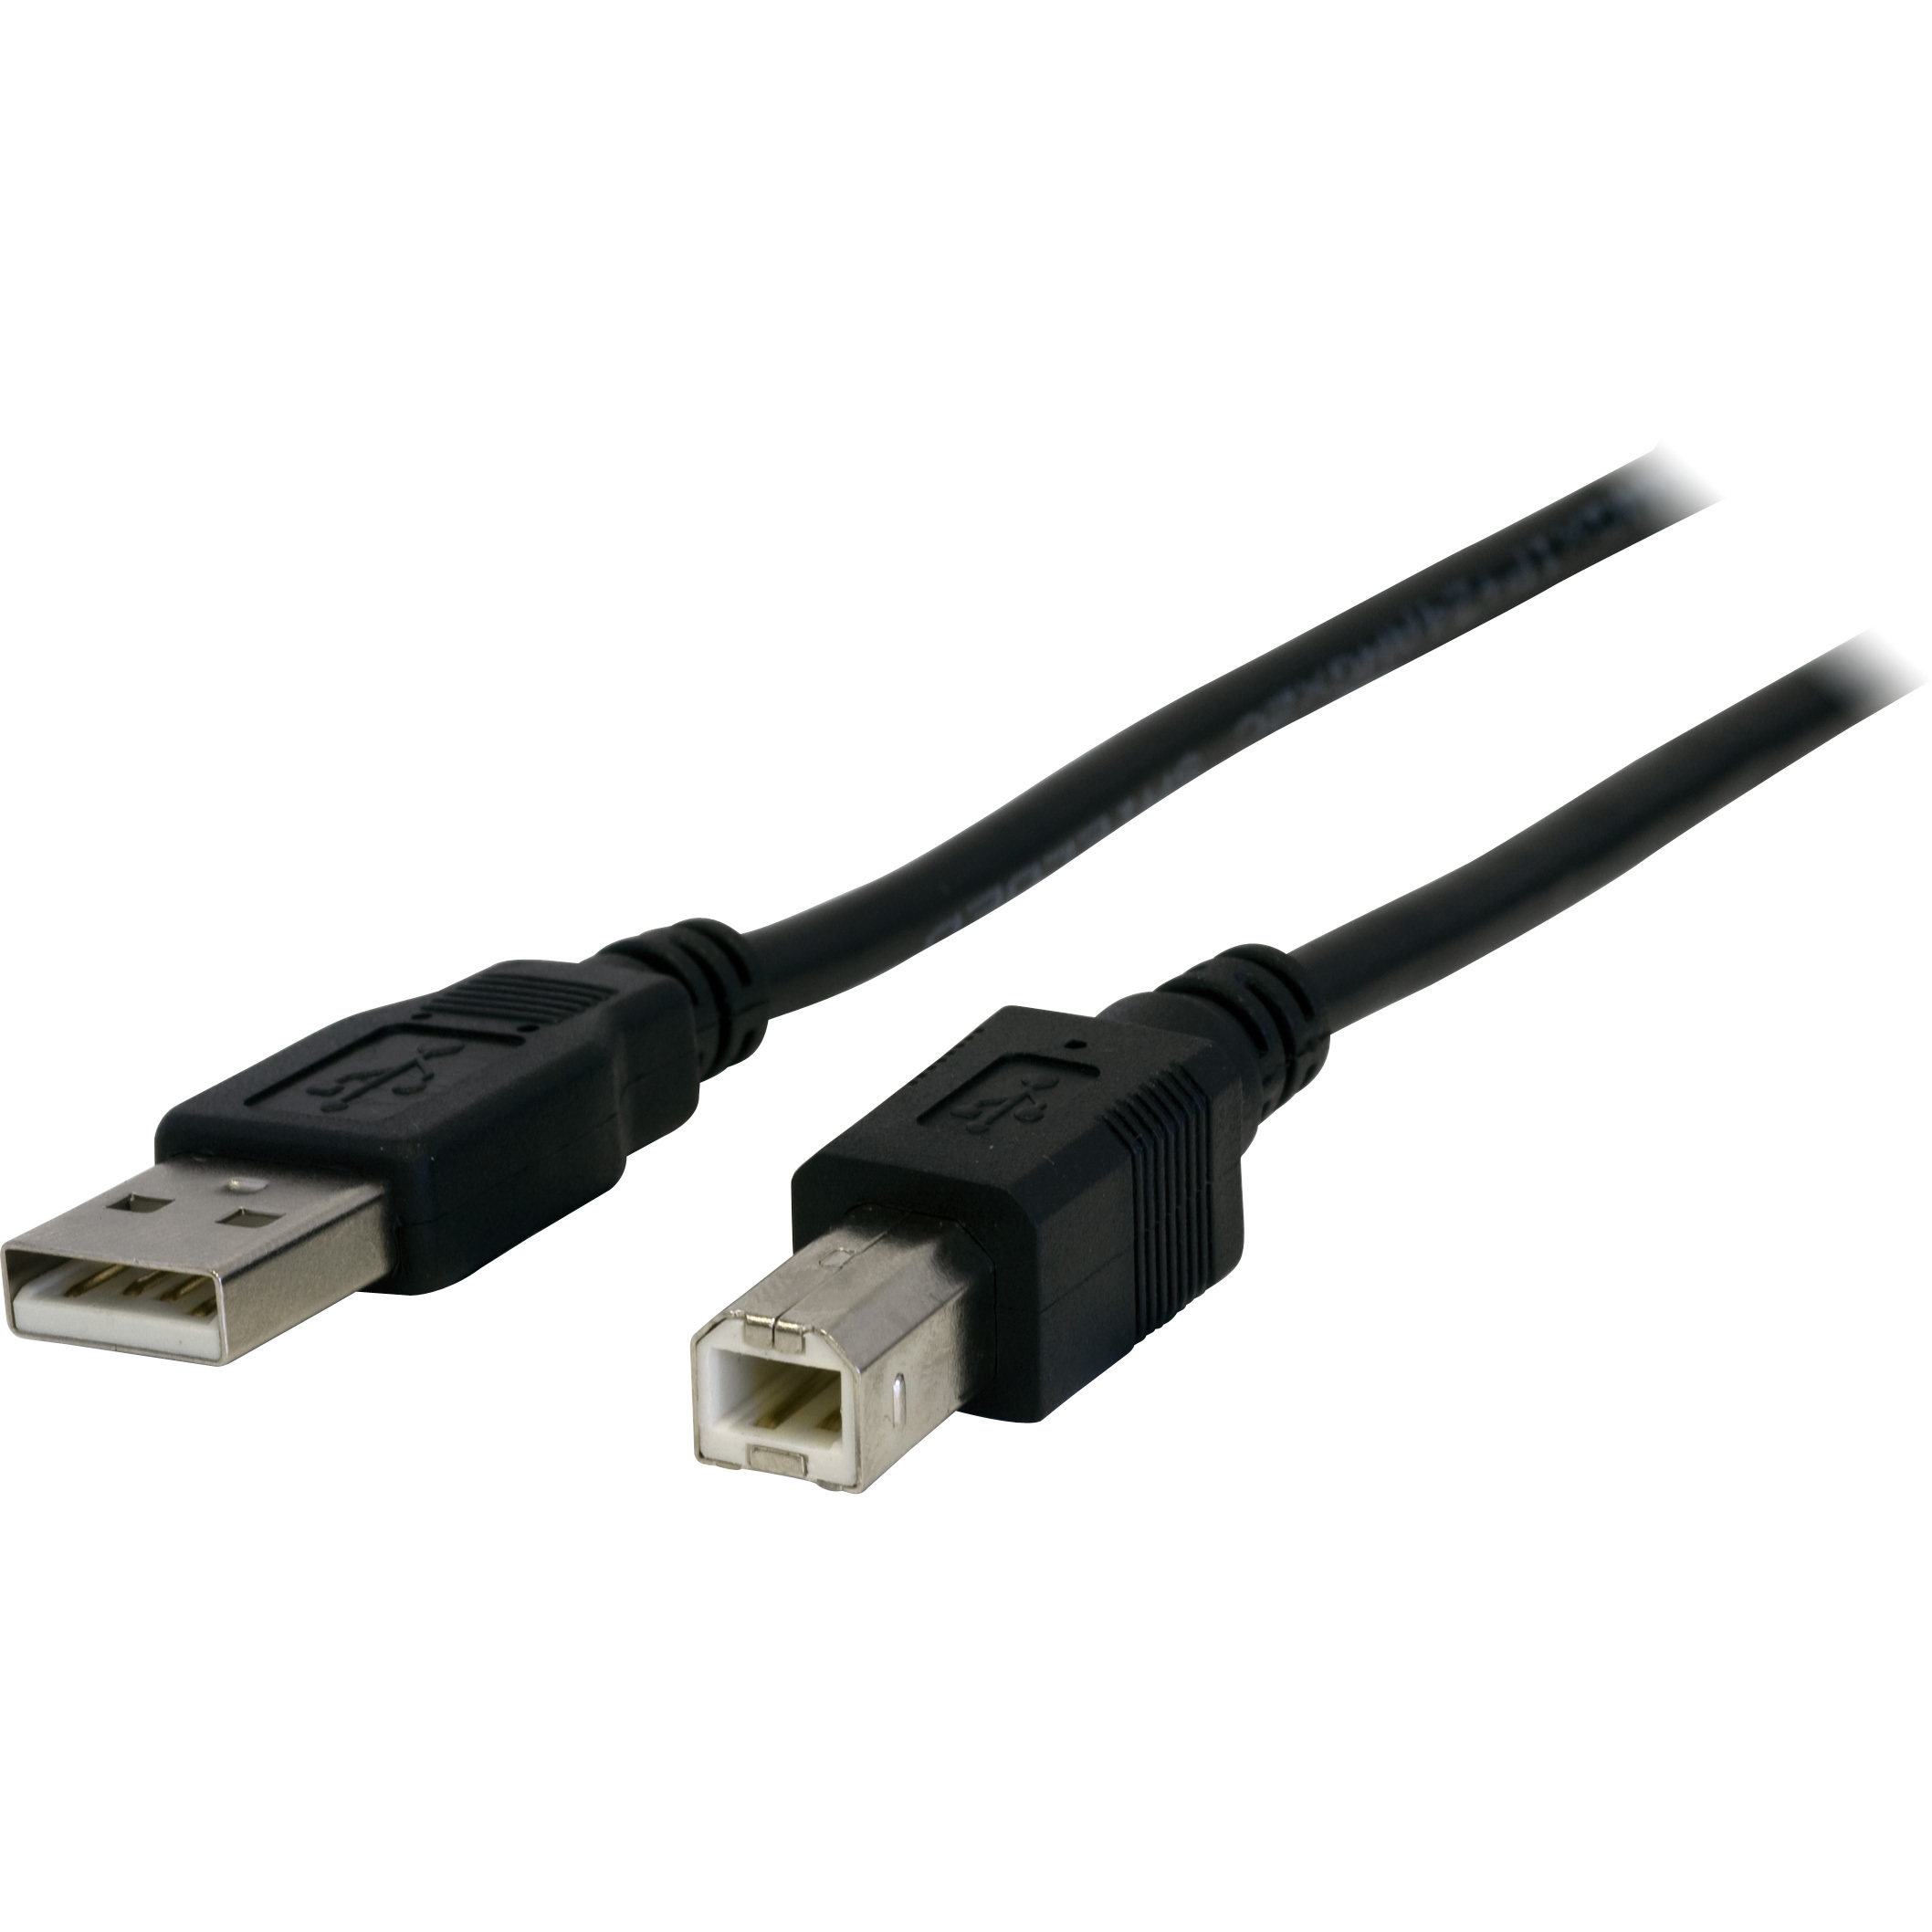 LC7200 – 2METRES – USB-A PLUG TO USB-B PLUG